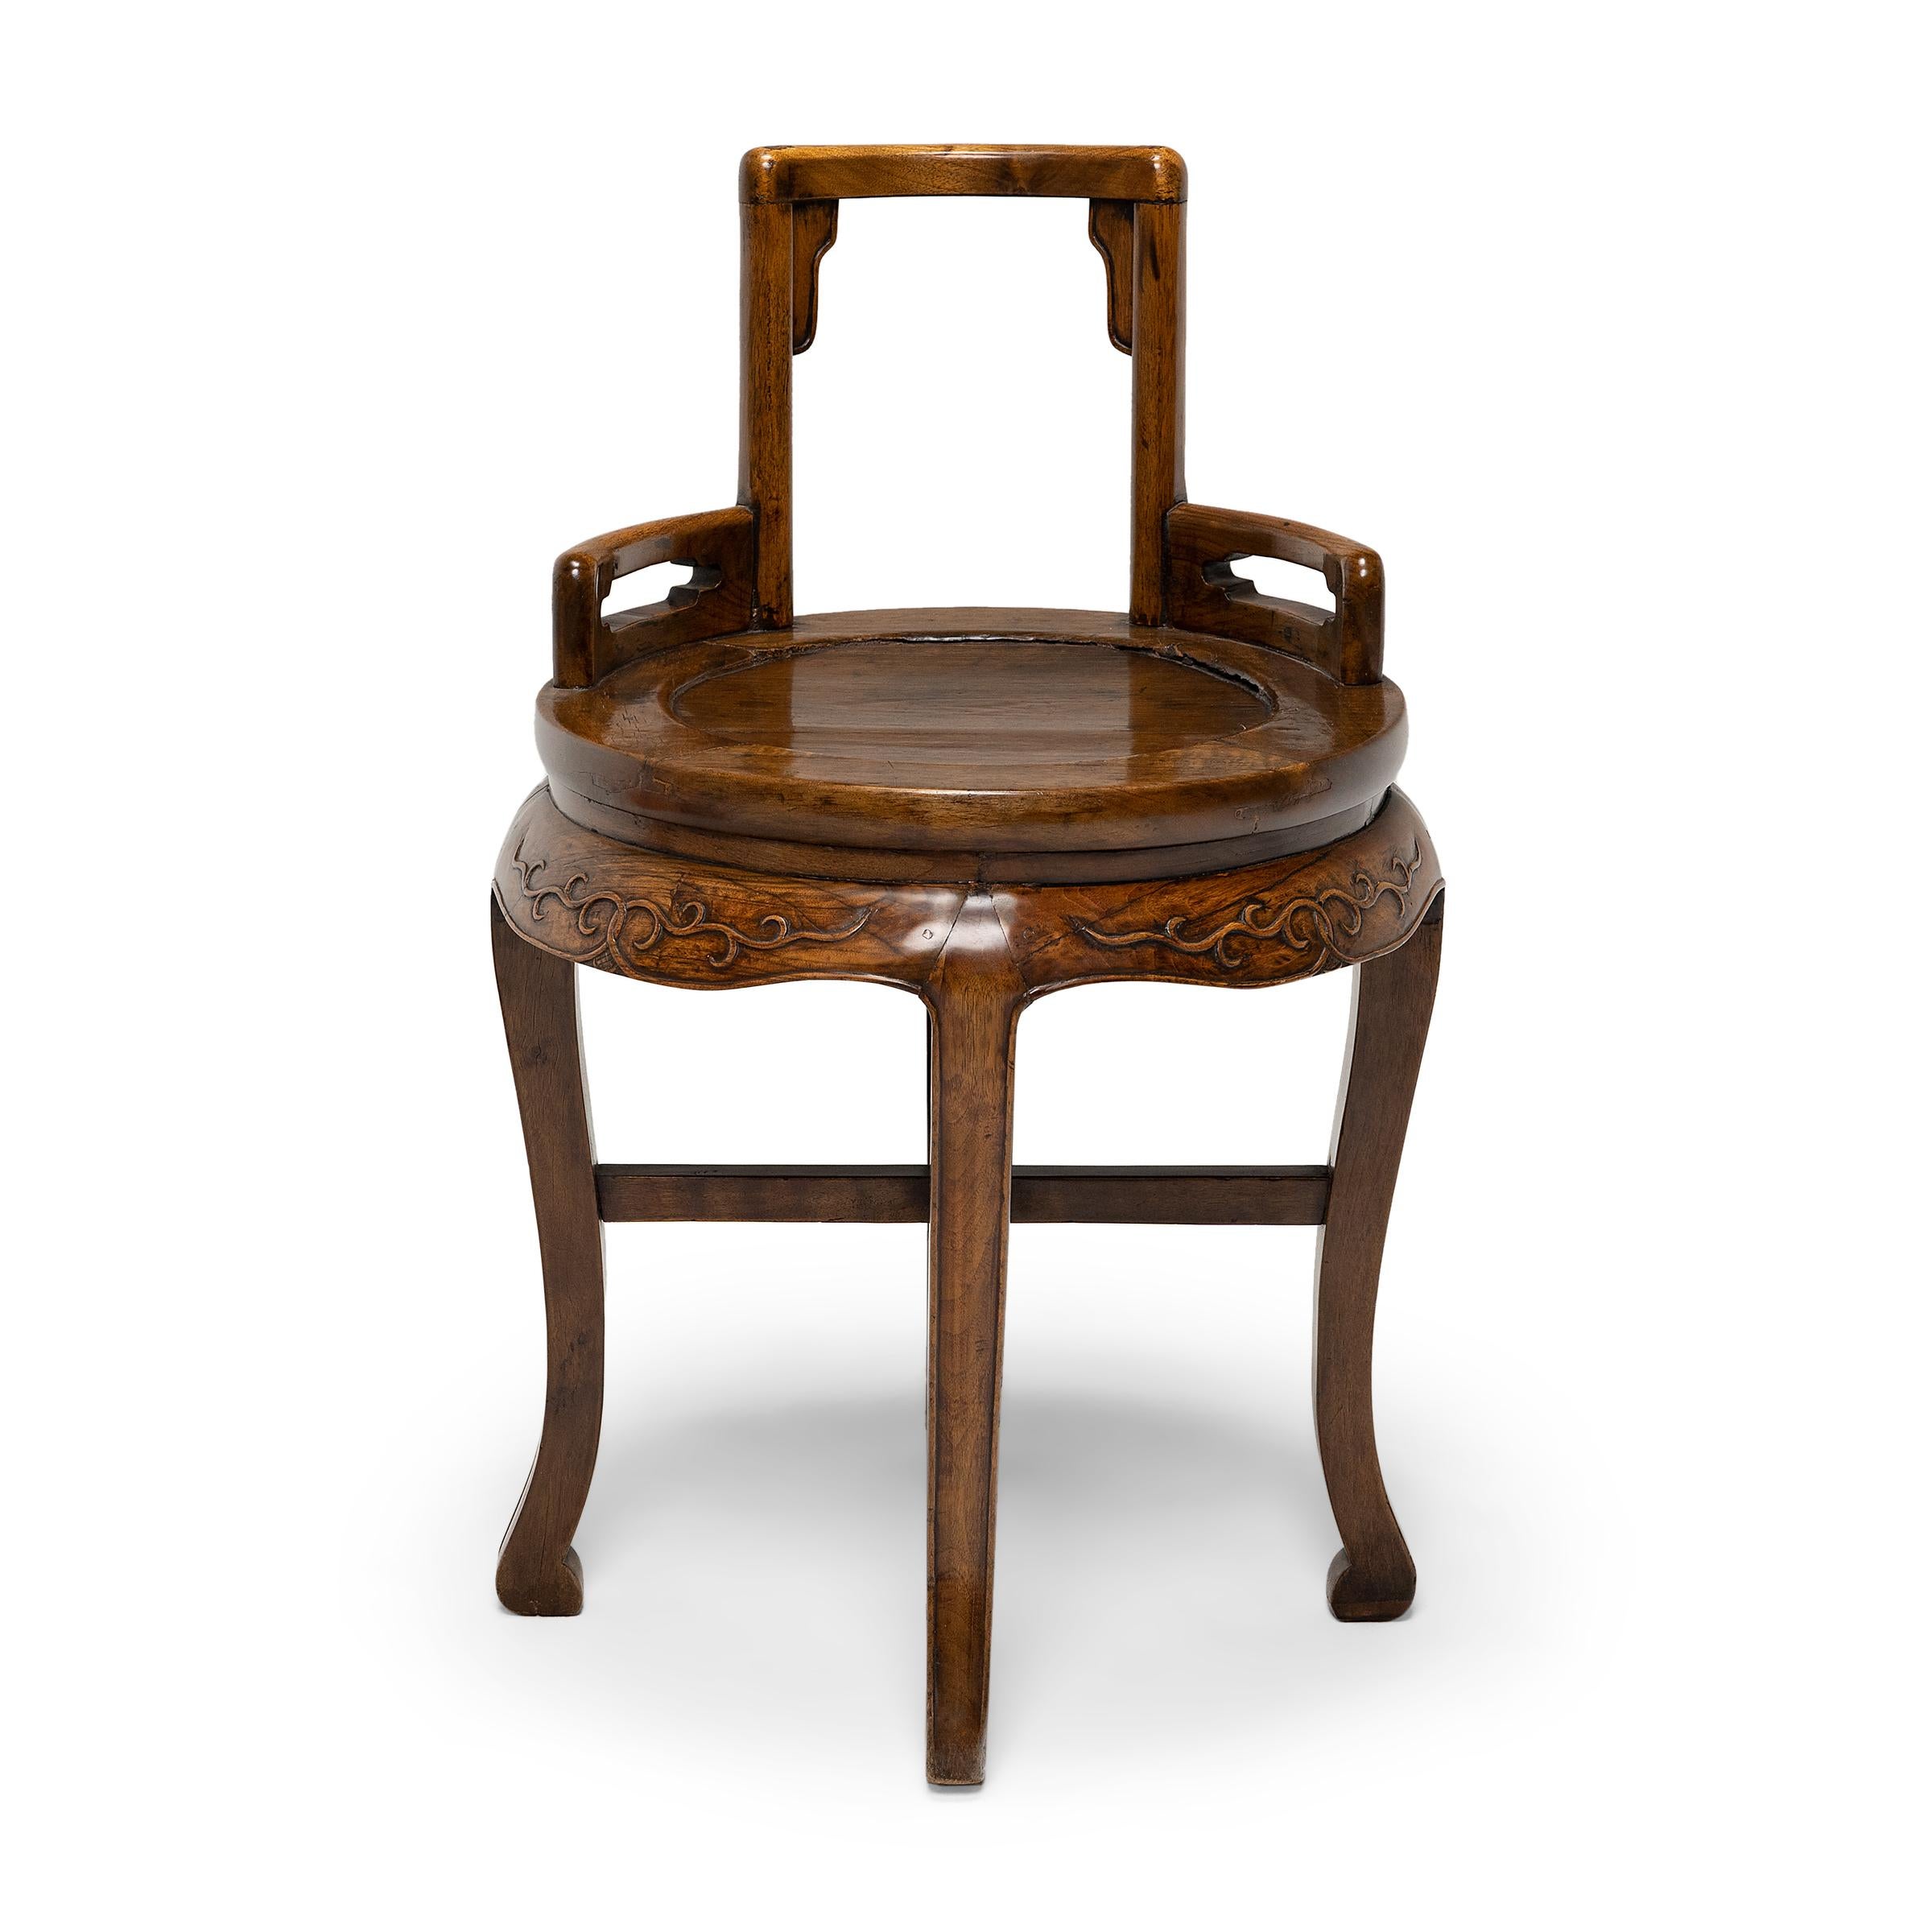 Dieser zierliche Damenstuhl aus dem späten 19. Jahrhundert kombiniert die niedrige, quadratische Rückenlehne der traditionellen Rosenstühle mit der runden Zarge und den Kabriole-Beinen der taillierten Tische. Der Stuhl hat eine offene Rückenlehne